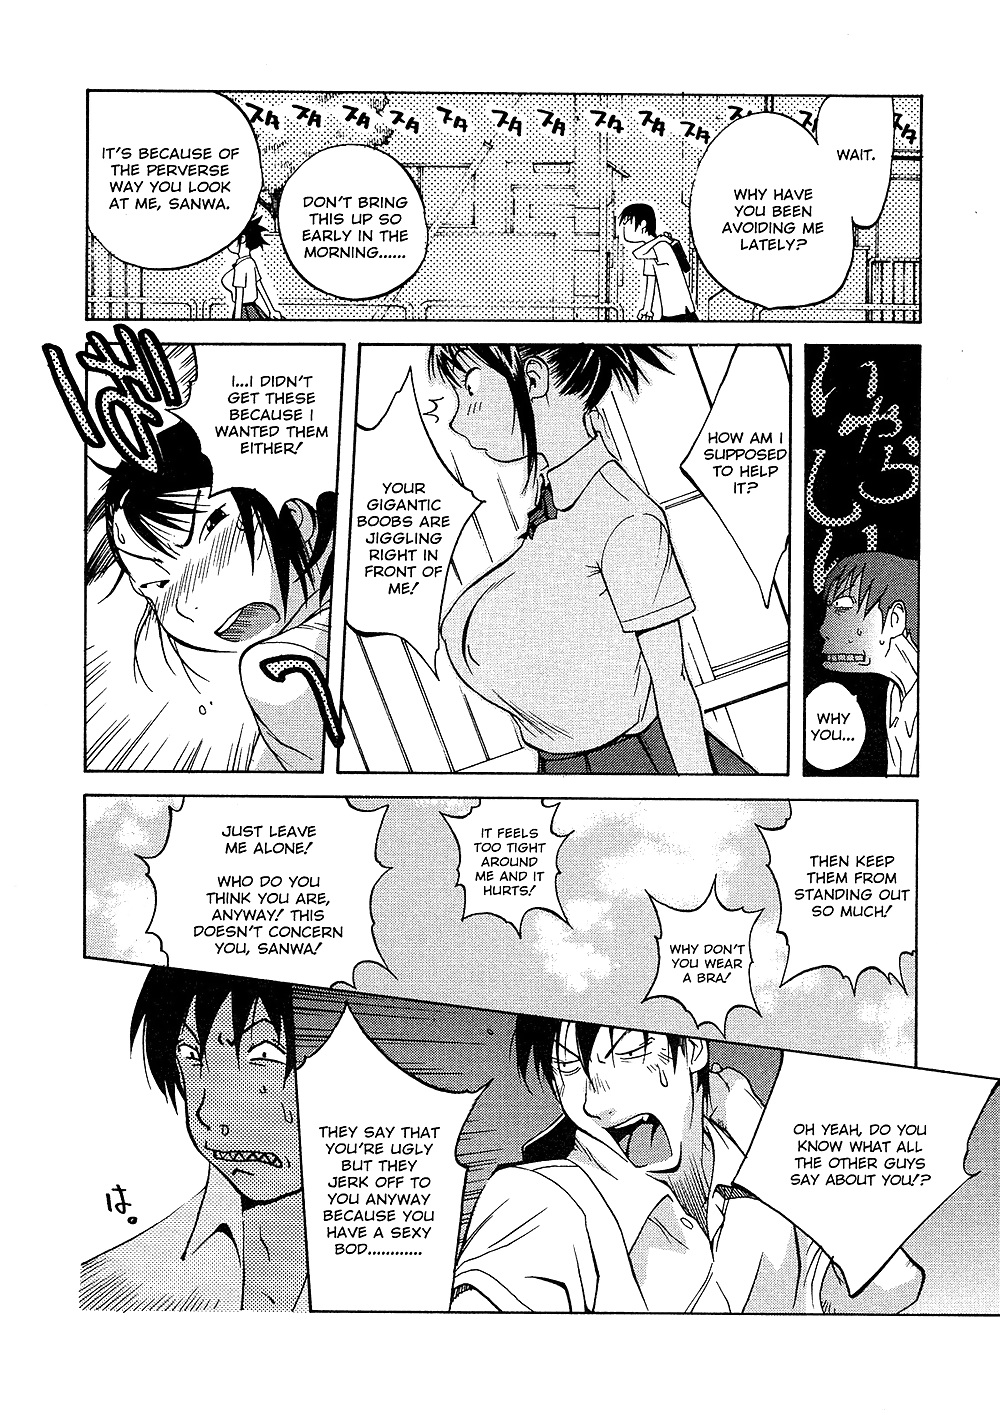 (comic hentai) yumisuke kotoyoshi erotic works #2
 #21623468